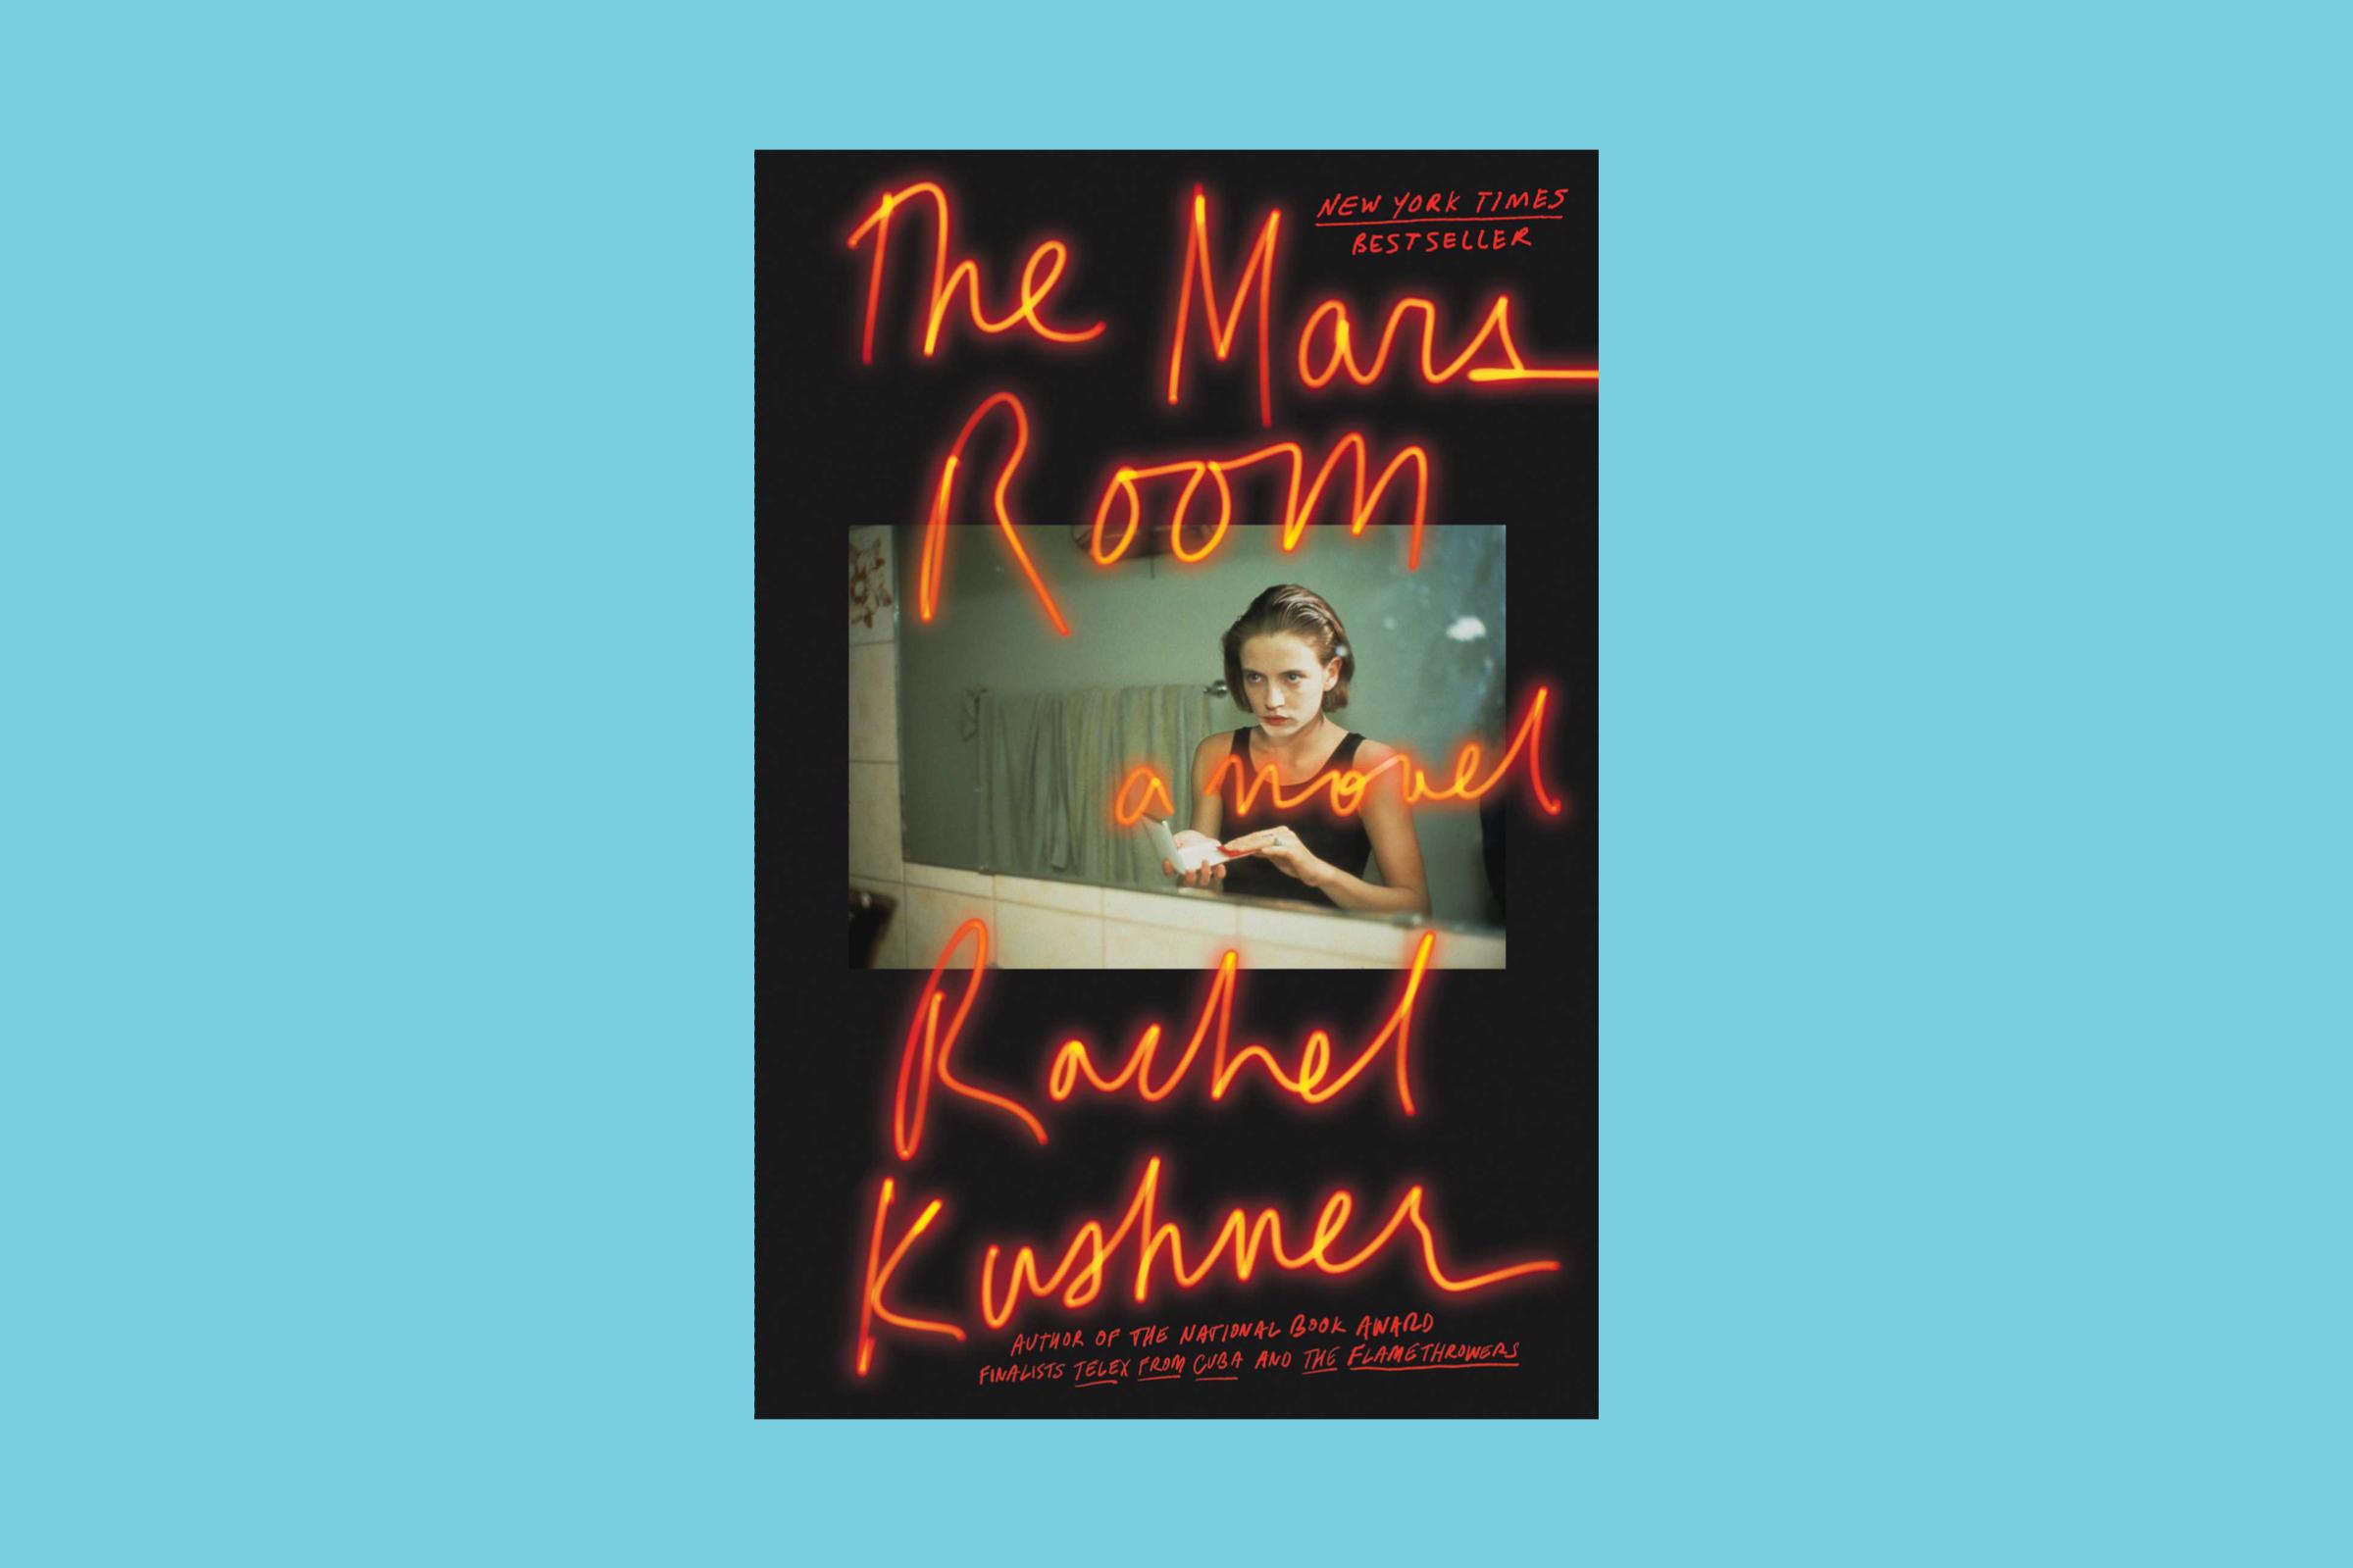 The Mars Room, Rachel Kushner, Scribner